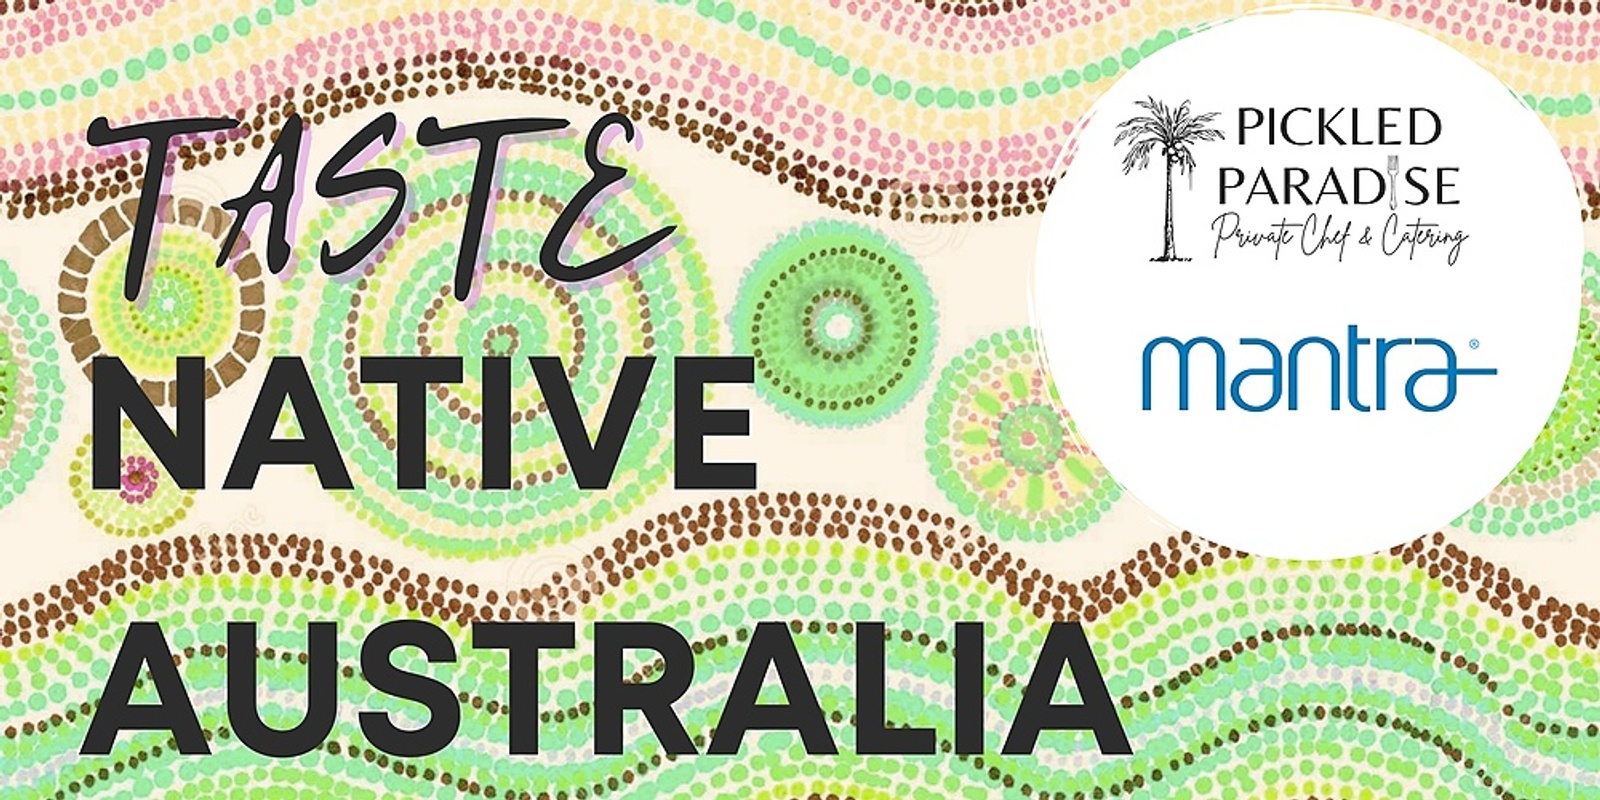 Banner image for Taste Native Australia